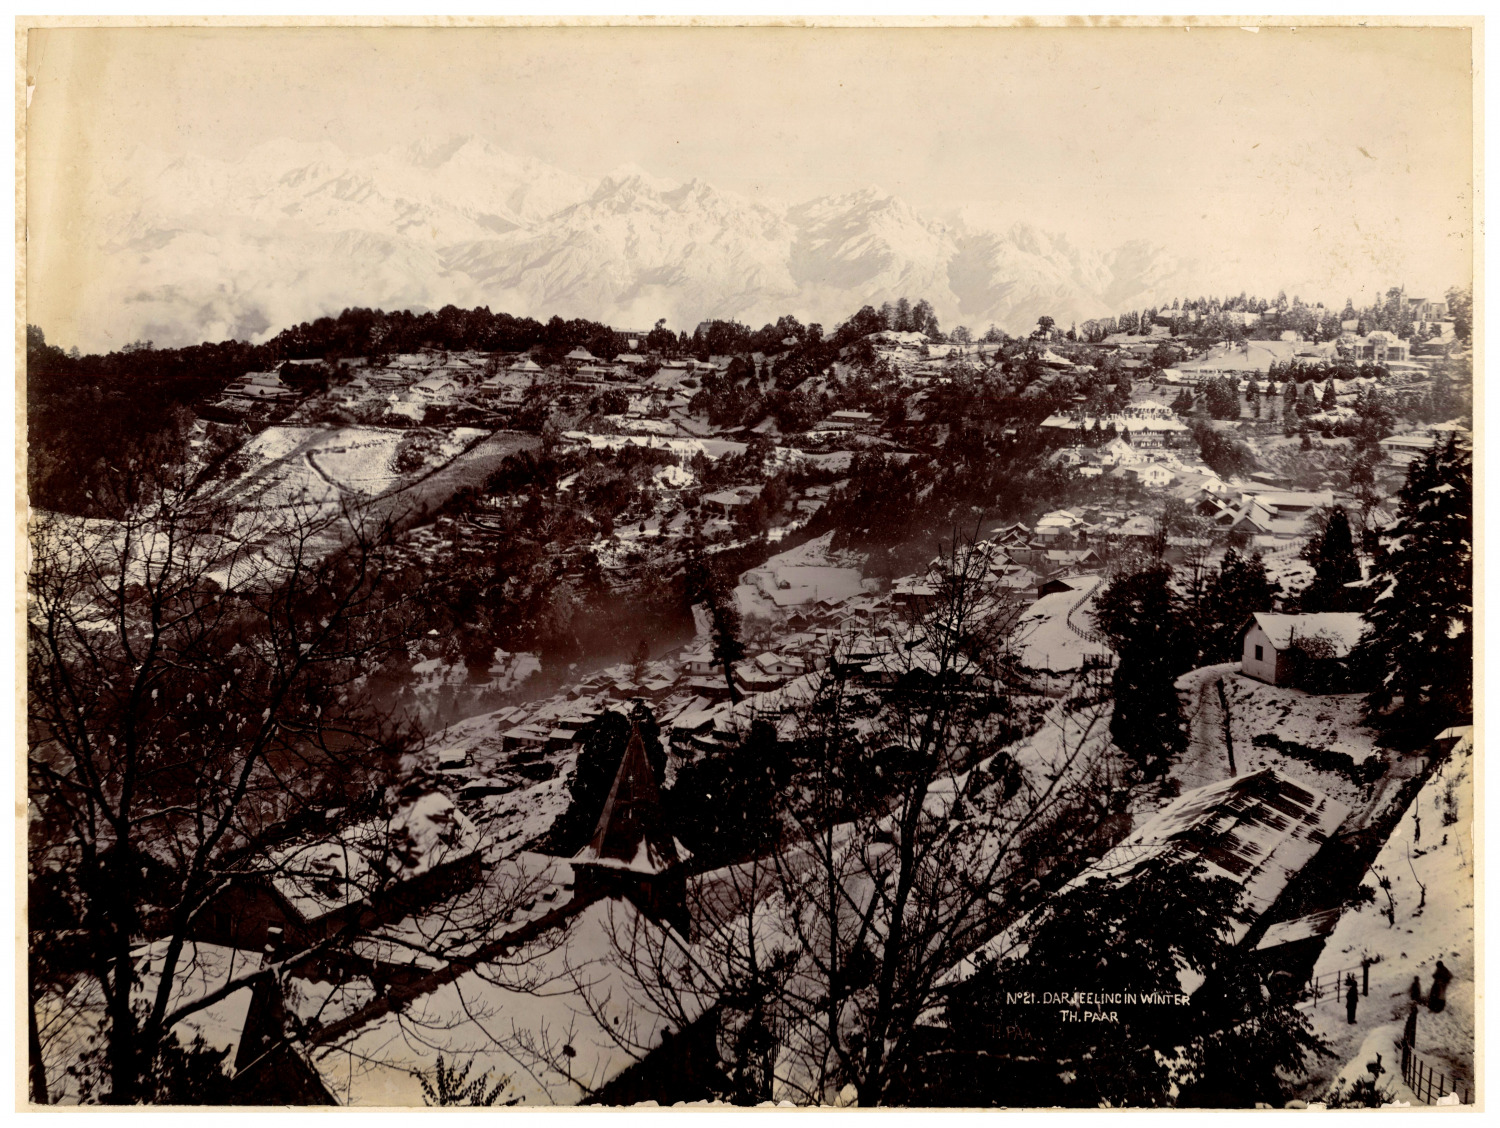 India, Darjeeling in Winter, Th. Pair Vintage Print, Silver Print 22x29.5